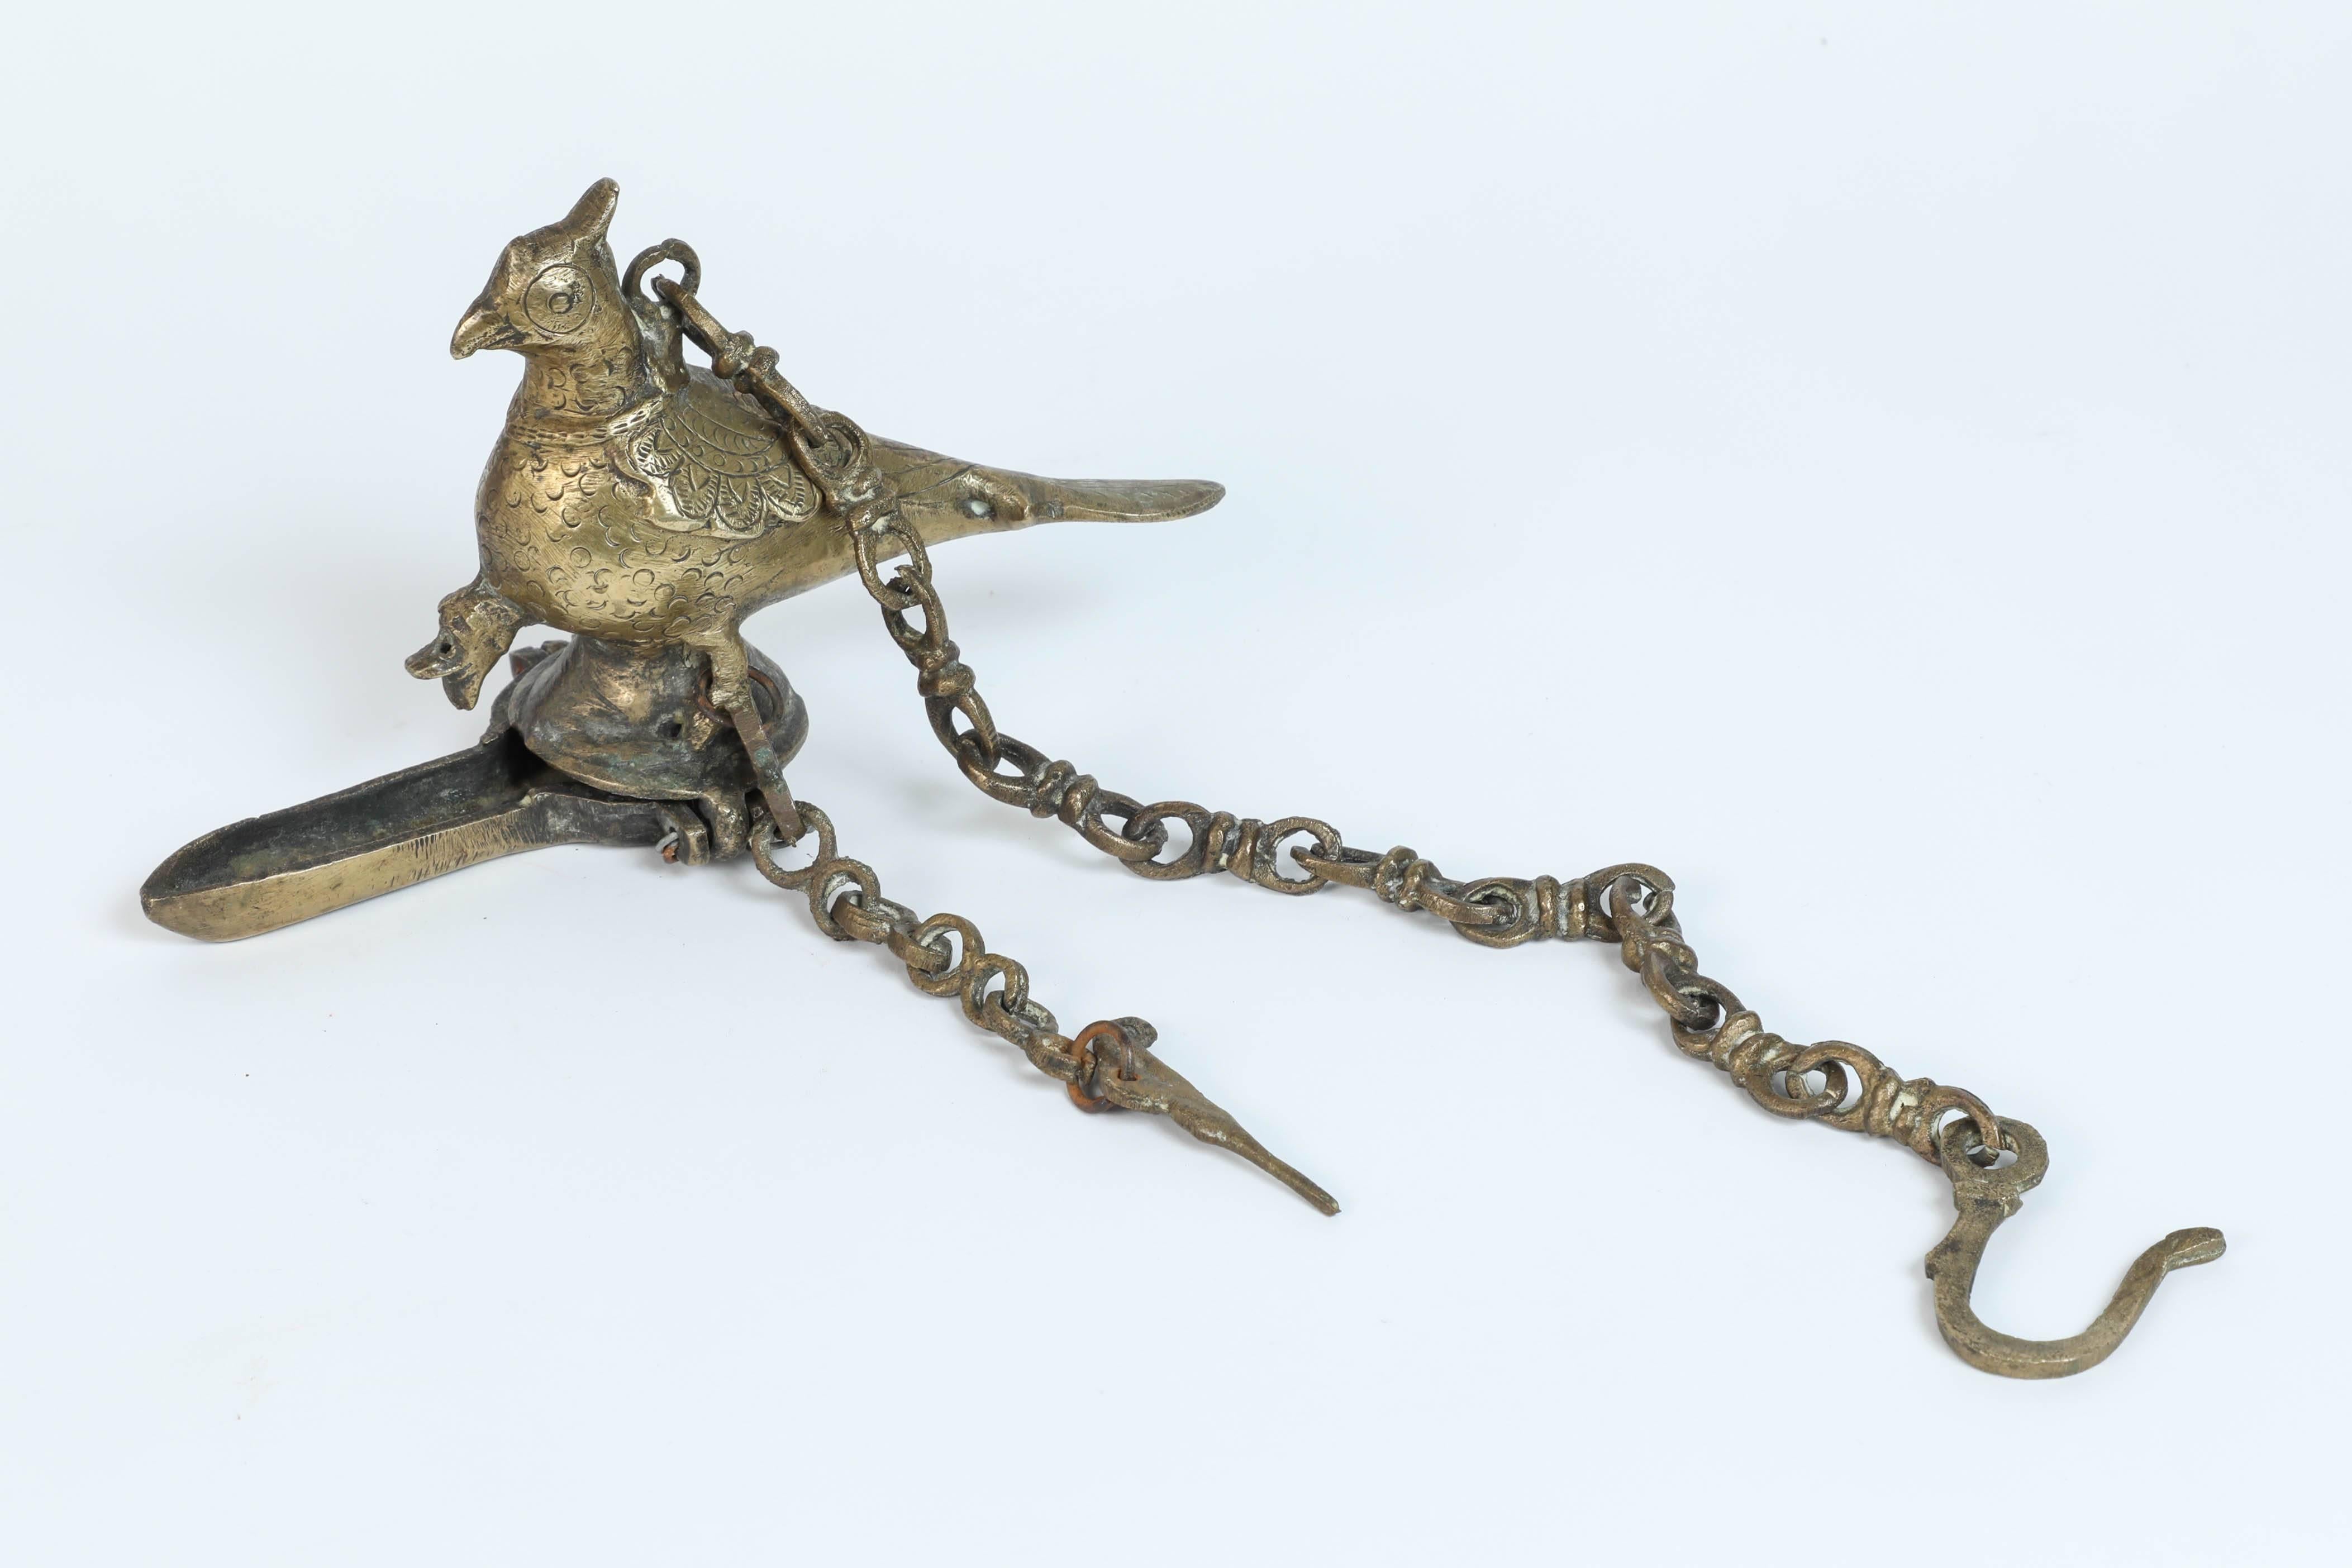 Antike hängende Öllampe aus Bronzeguss in Form einer schönen mythischen Vogelpfauenfigur mit Aufhängekette.
Der Körper des Vogels dient als Reservoir für das Öl, während die Tülle am Boden den Docht der Lampe aufnimmt.
Handgefertigt im 